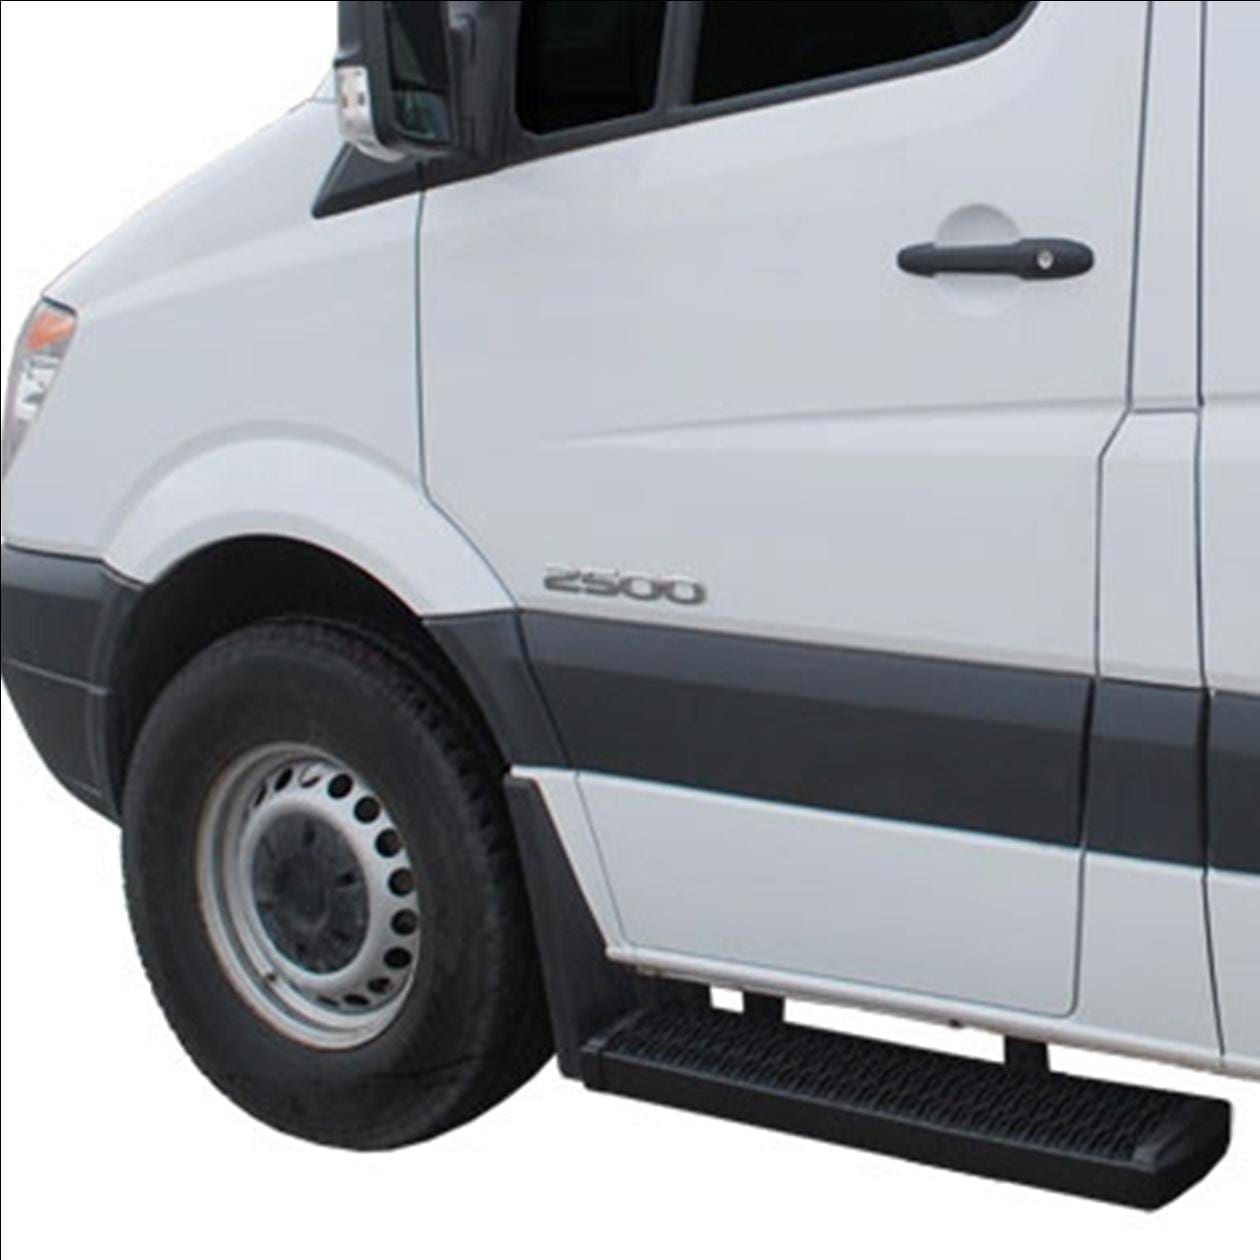 Freightliner LUVERNE 415036-400741 Grip Step Black Aluminum 36-Inch Cargo Van Running Boards for Select Dodge 3500 Mercedes-Benz Sprinter 2500 